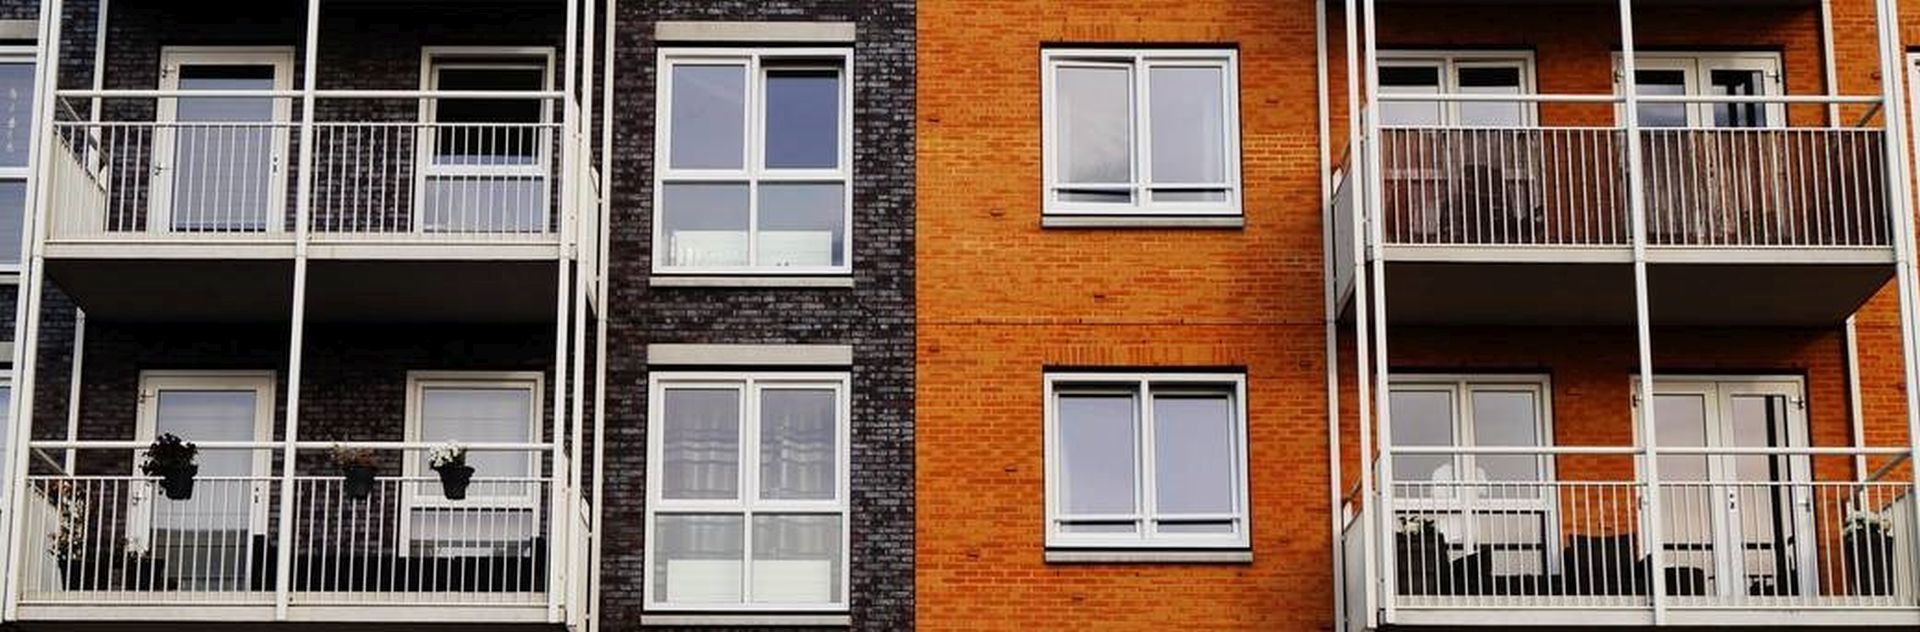 Hausfassade mit Fenstern und Balkonen